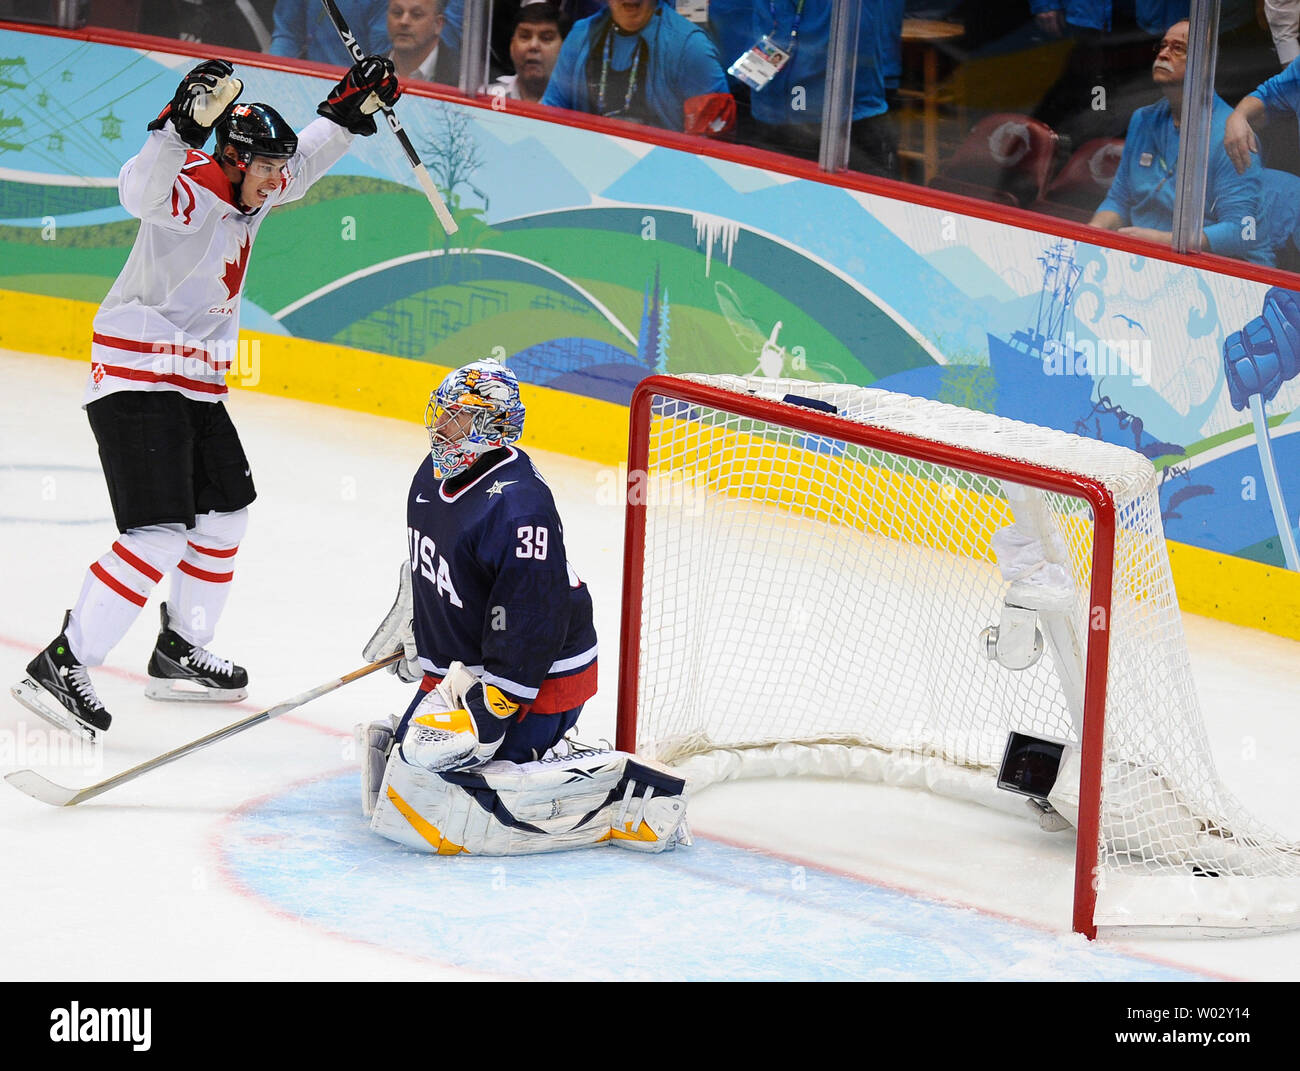 2010 Olympics Team Canada – Sidney Crosby